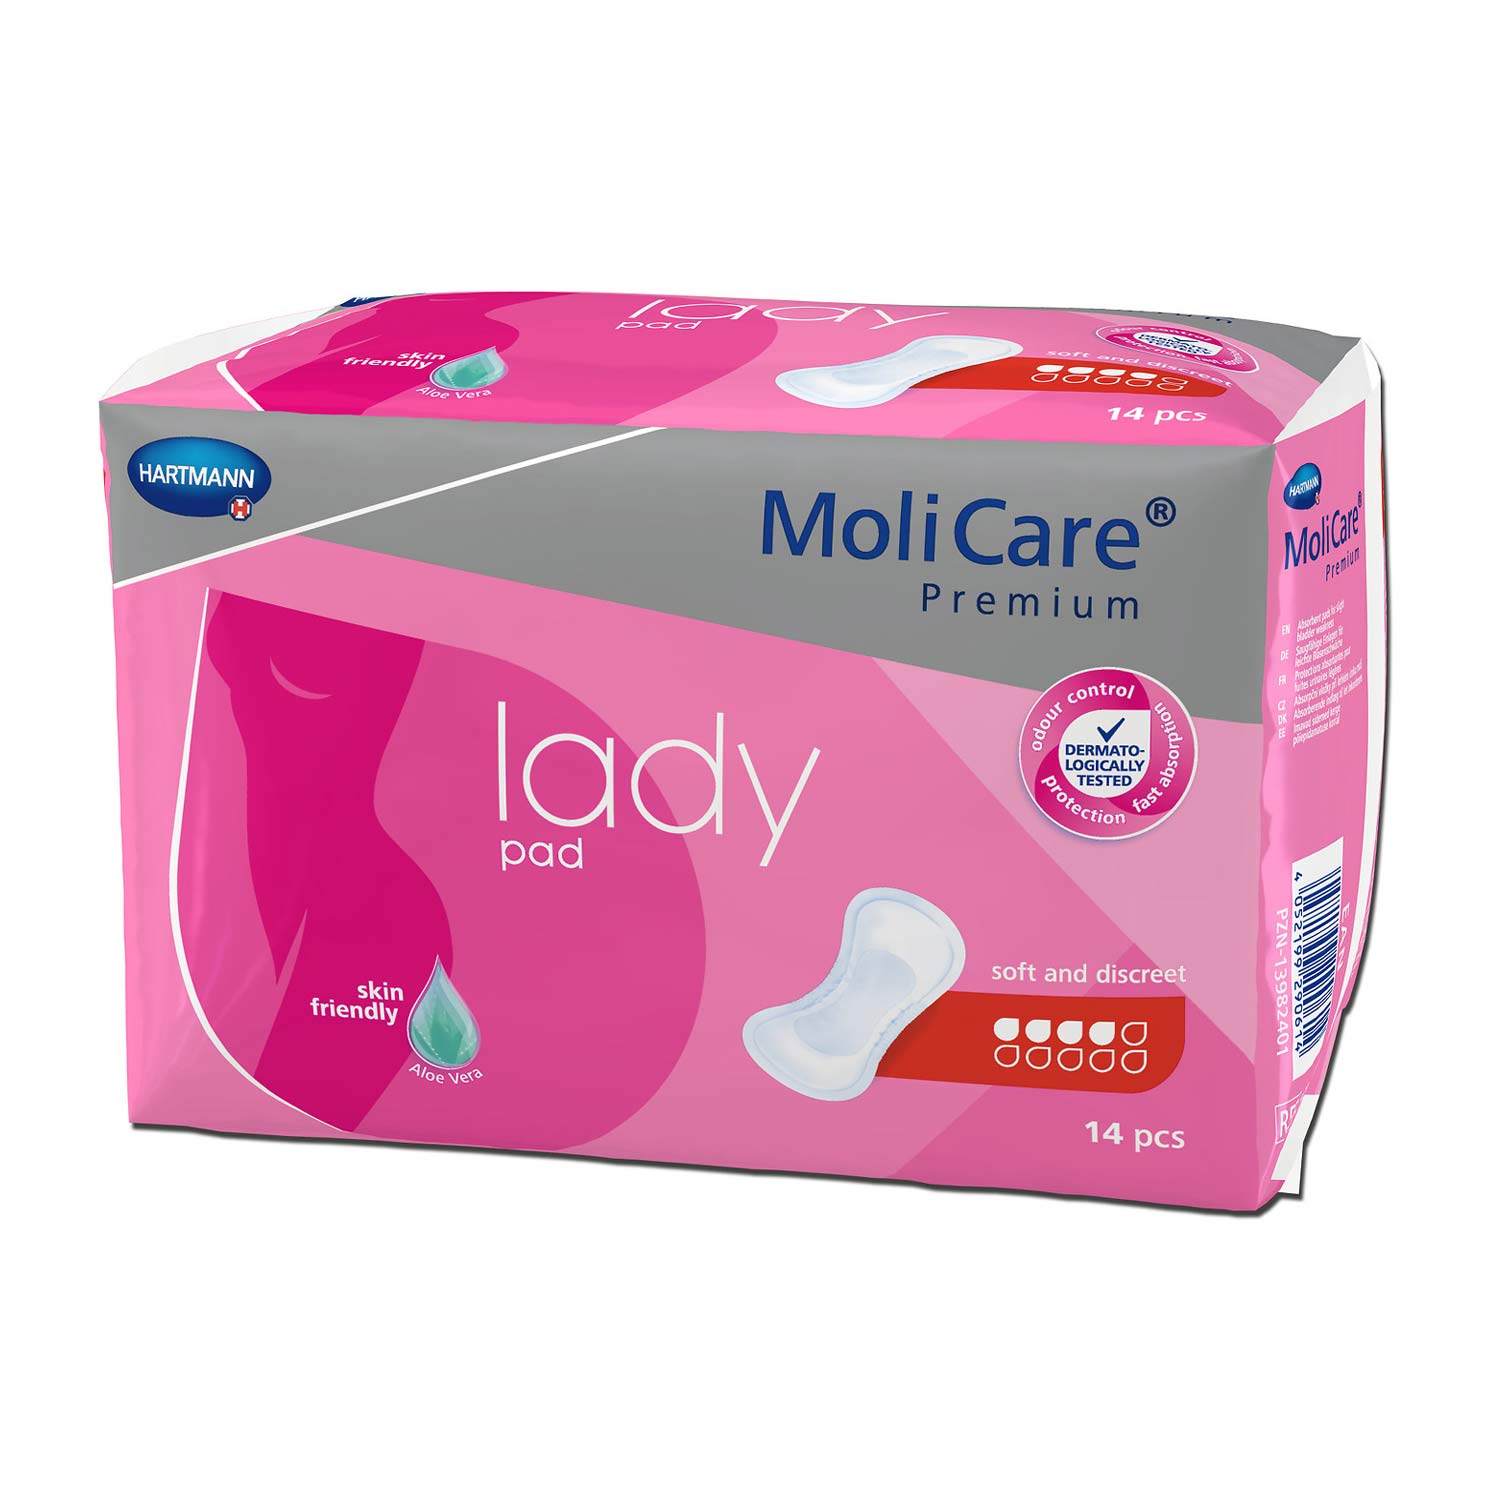 MoliCare Premium lady pad 4 Tropfen, Einlage